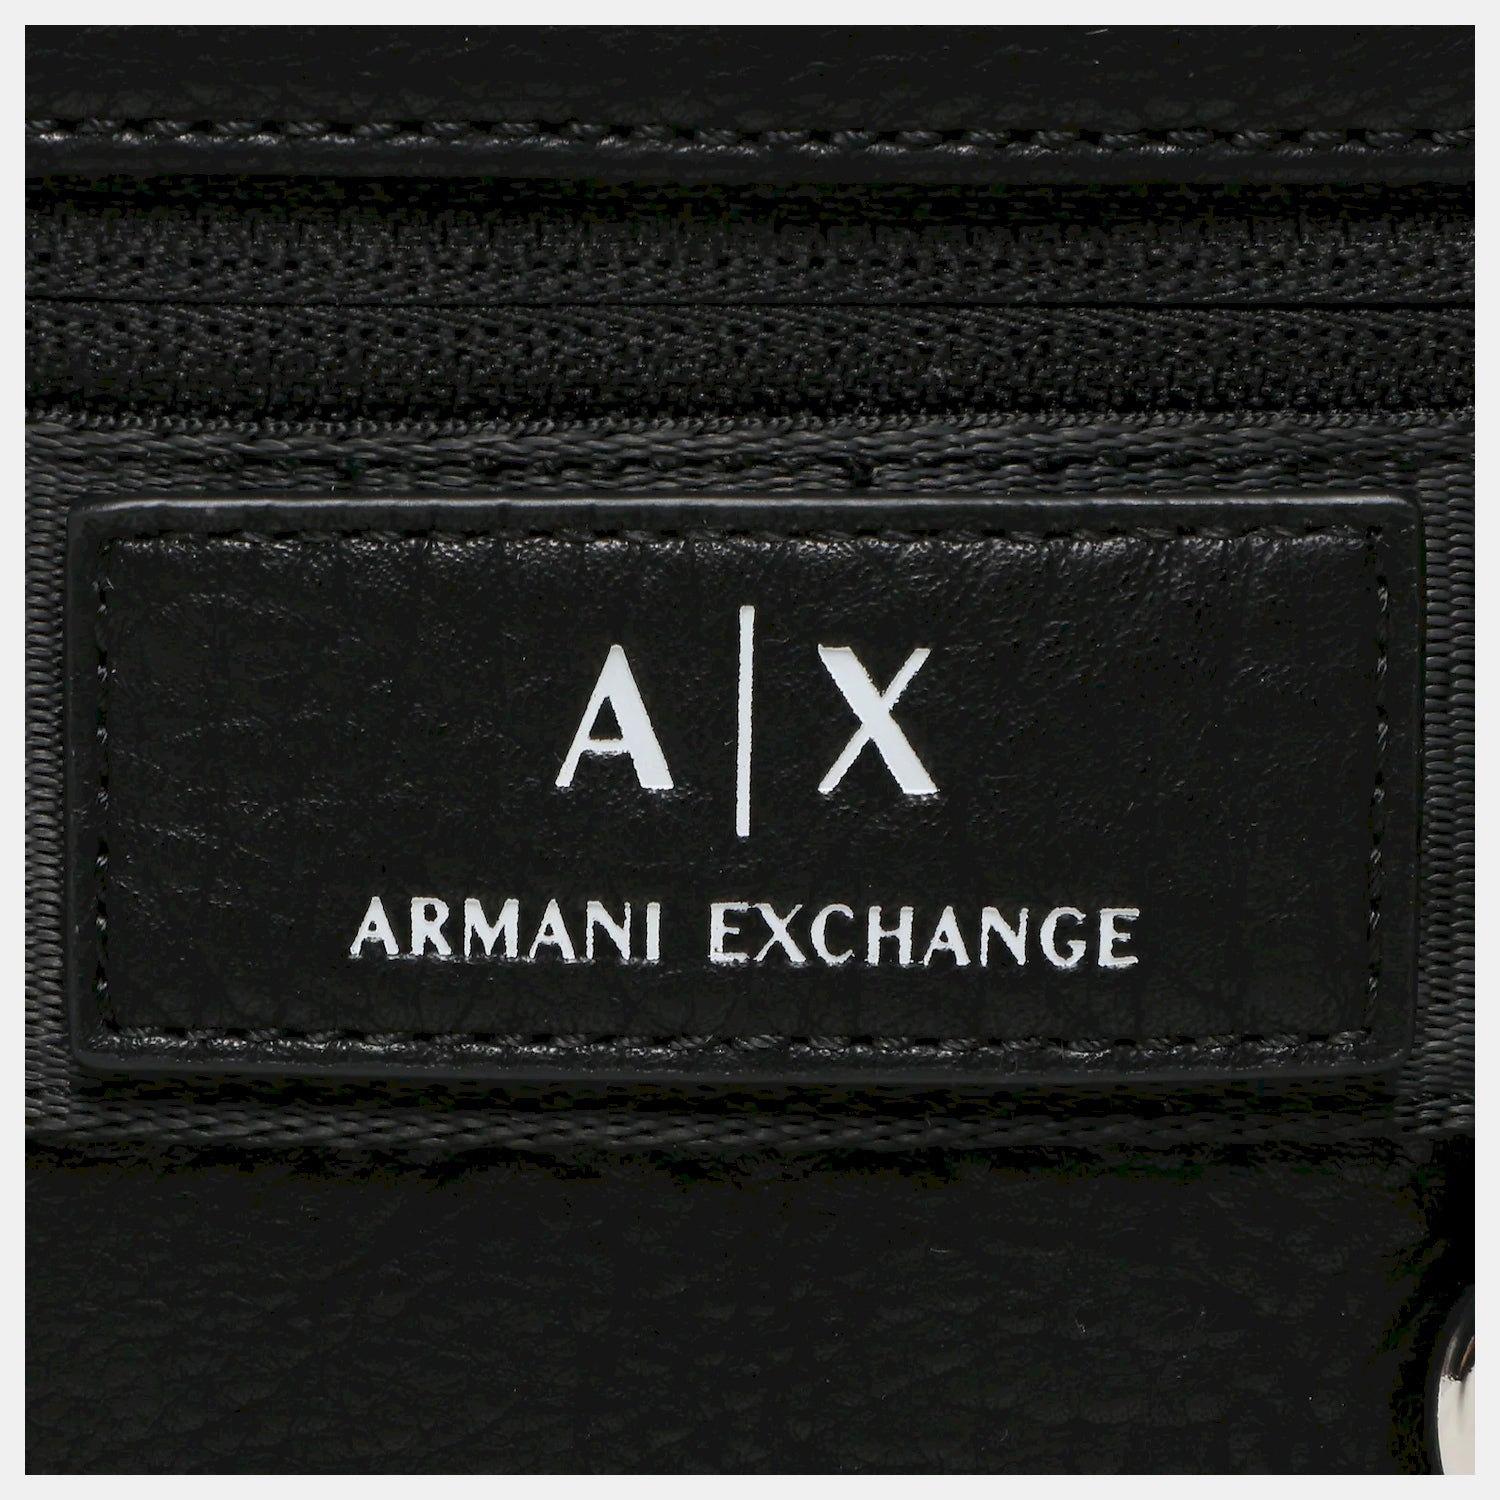 Crossbody Armani Exchange